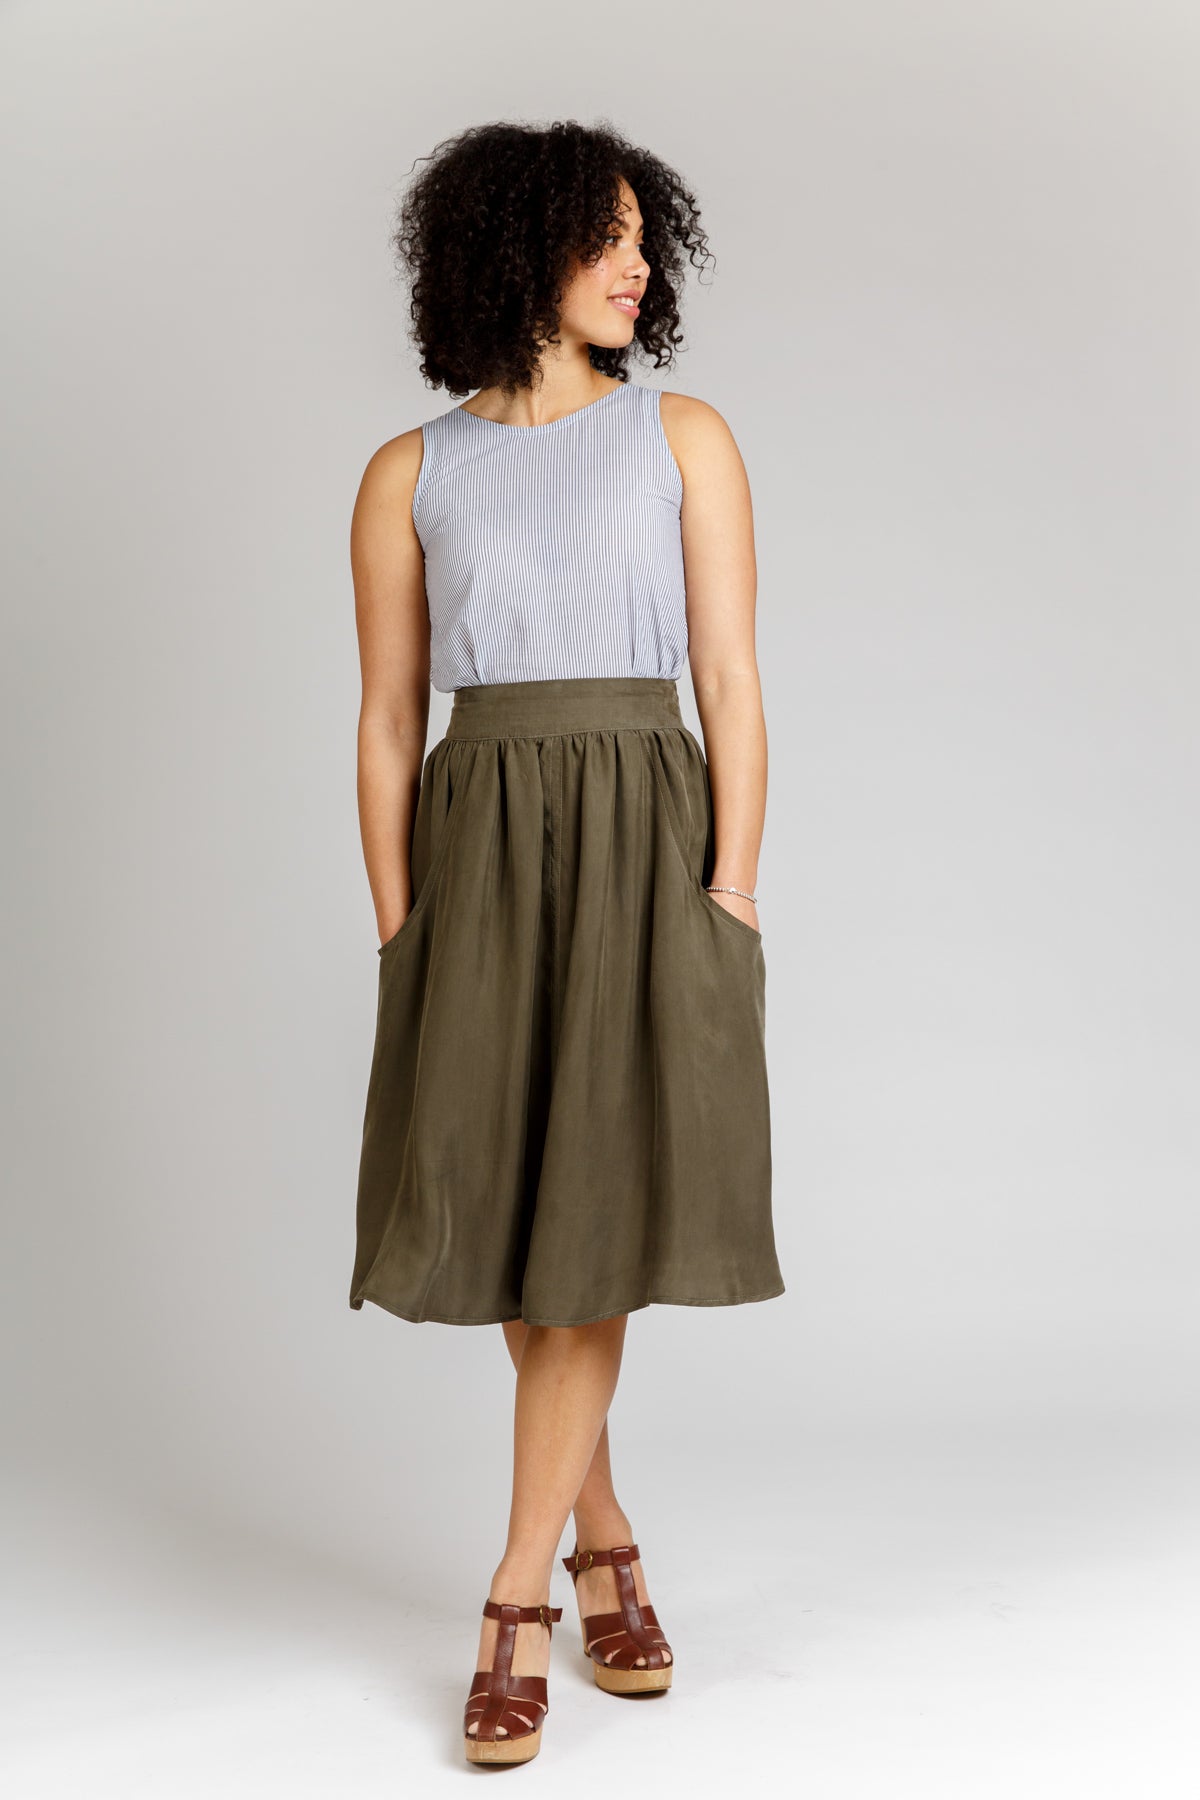 Brumby Skirt by Megan Nielsen Patterns